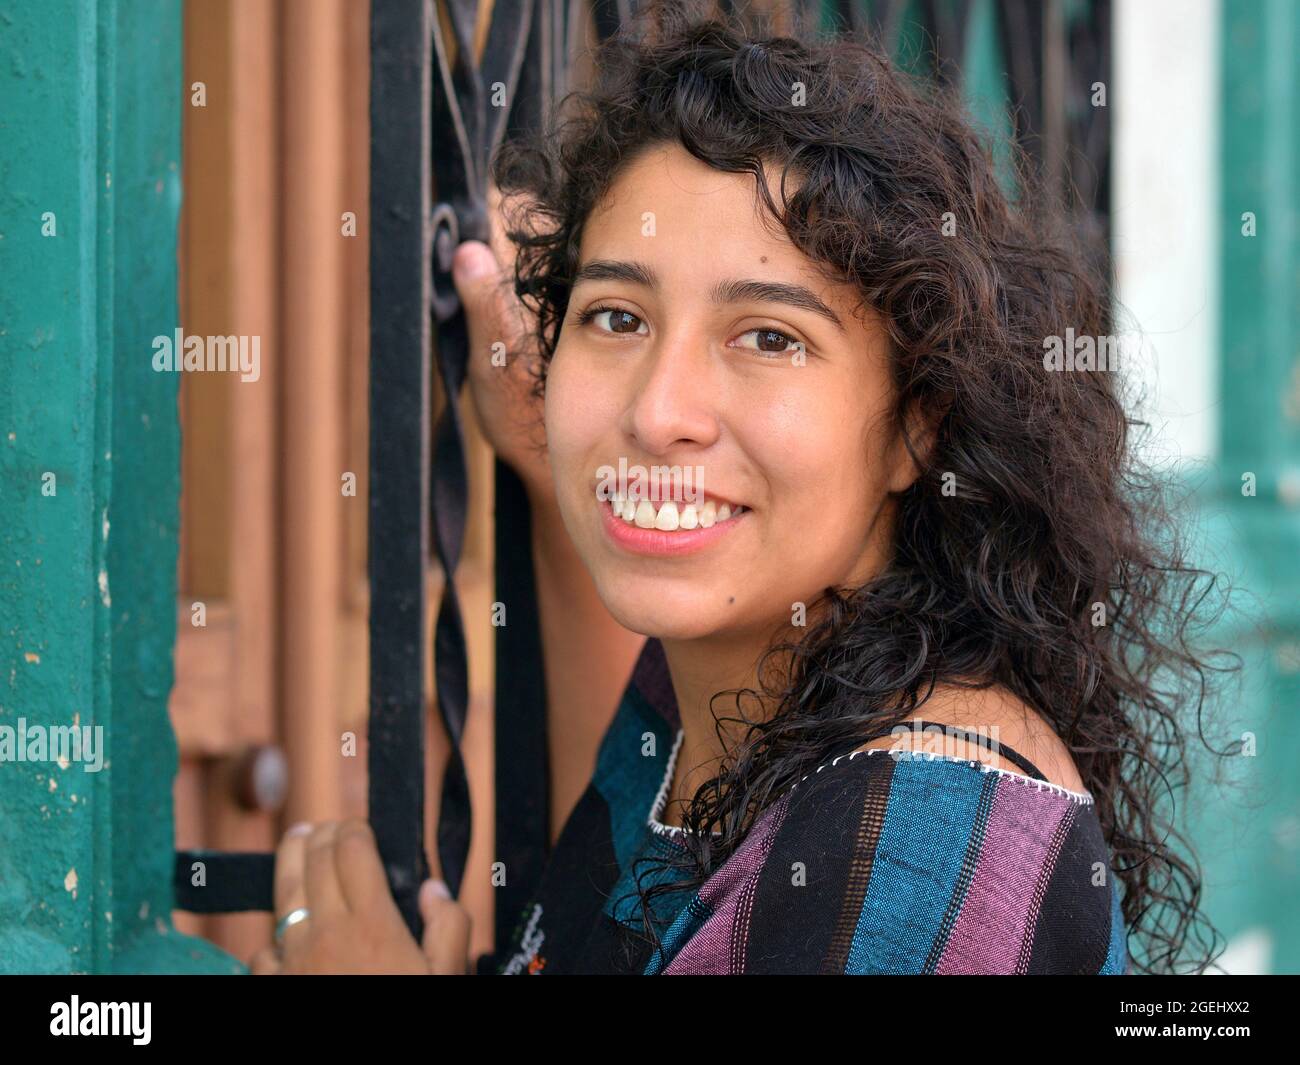 Schöne positive emotionale junge mexikanische Latina Hispanic Frau mit langen schwarzen Locken hält an einem schwarz lackierten Sicherheitsstahl Fenstergrill. Stockfoto